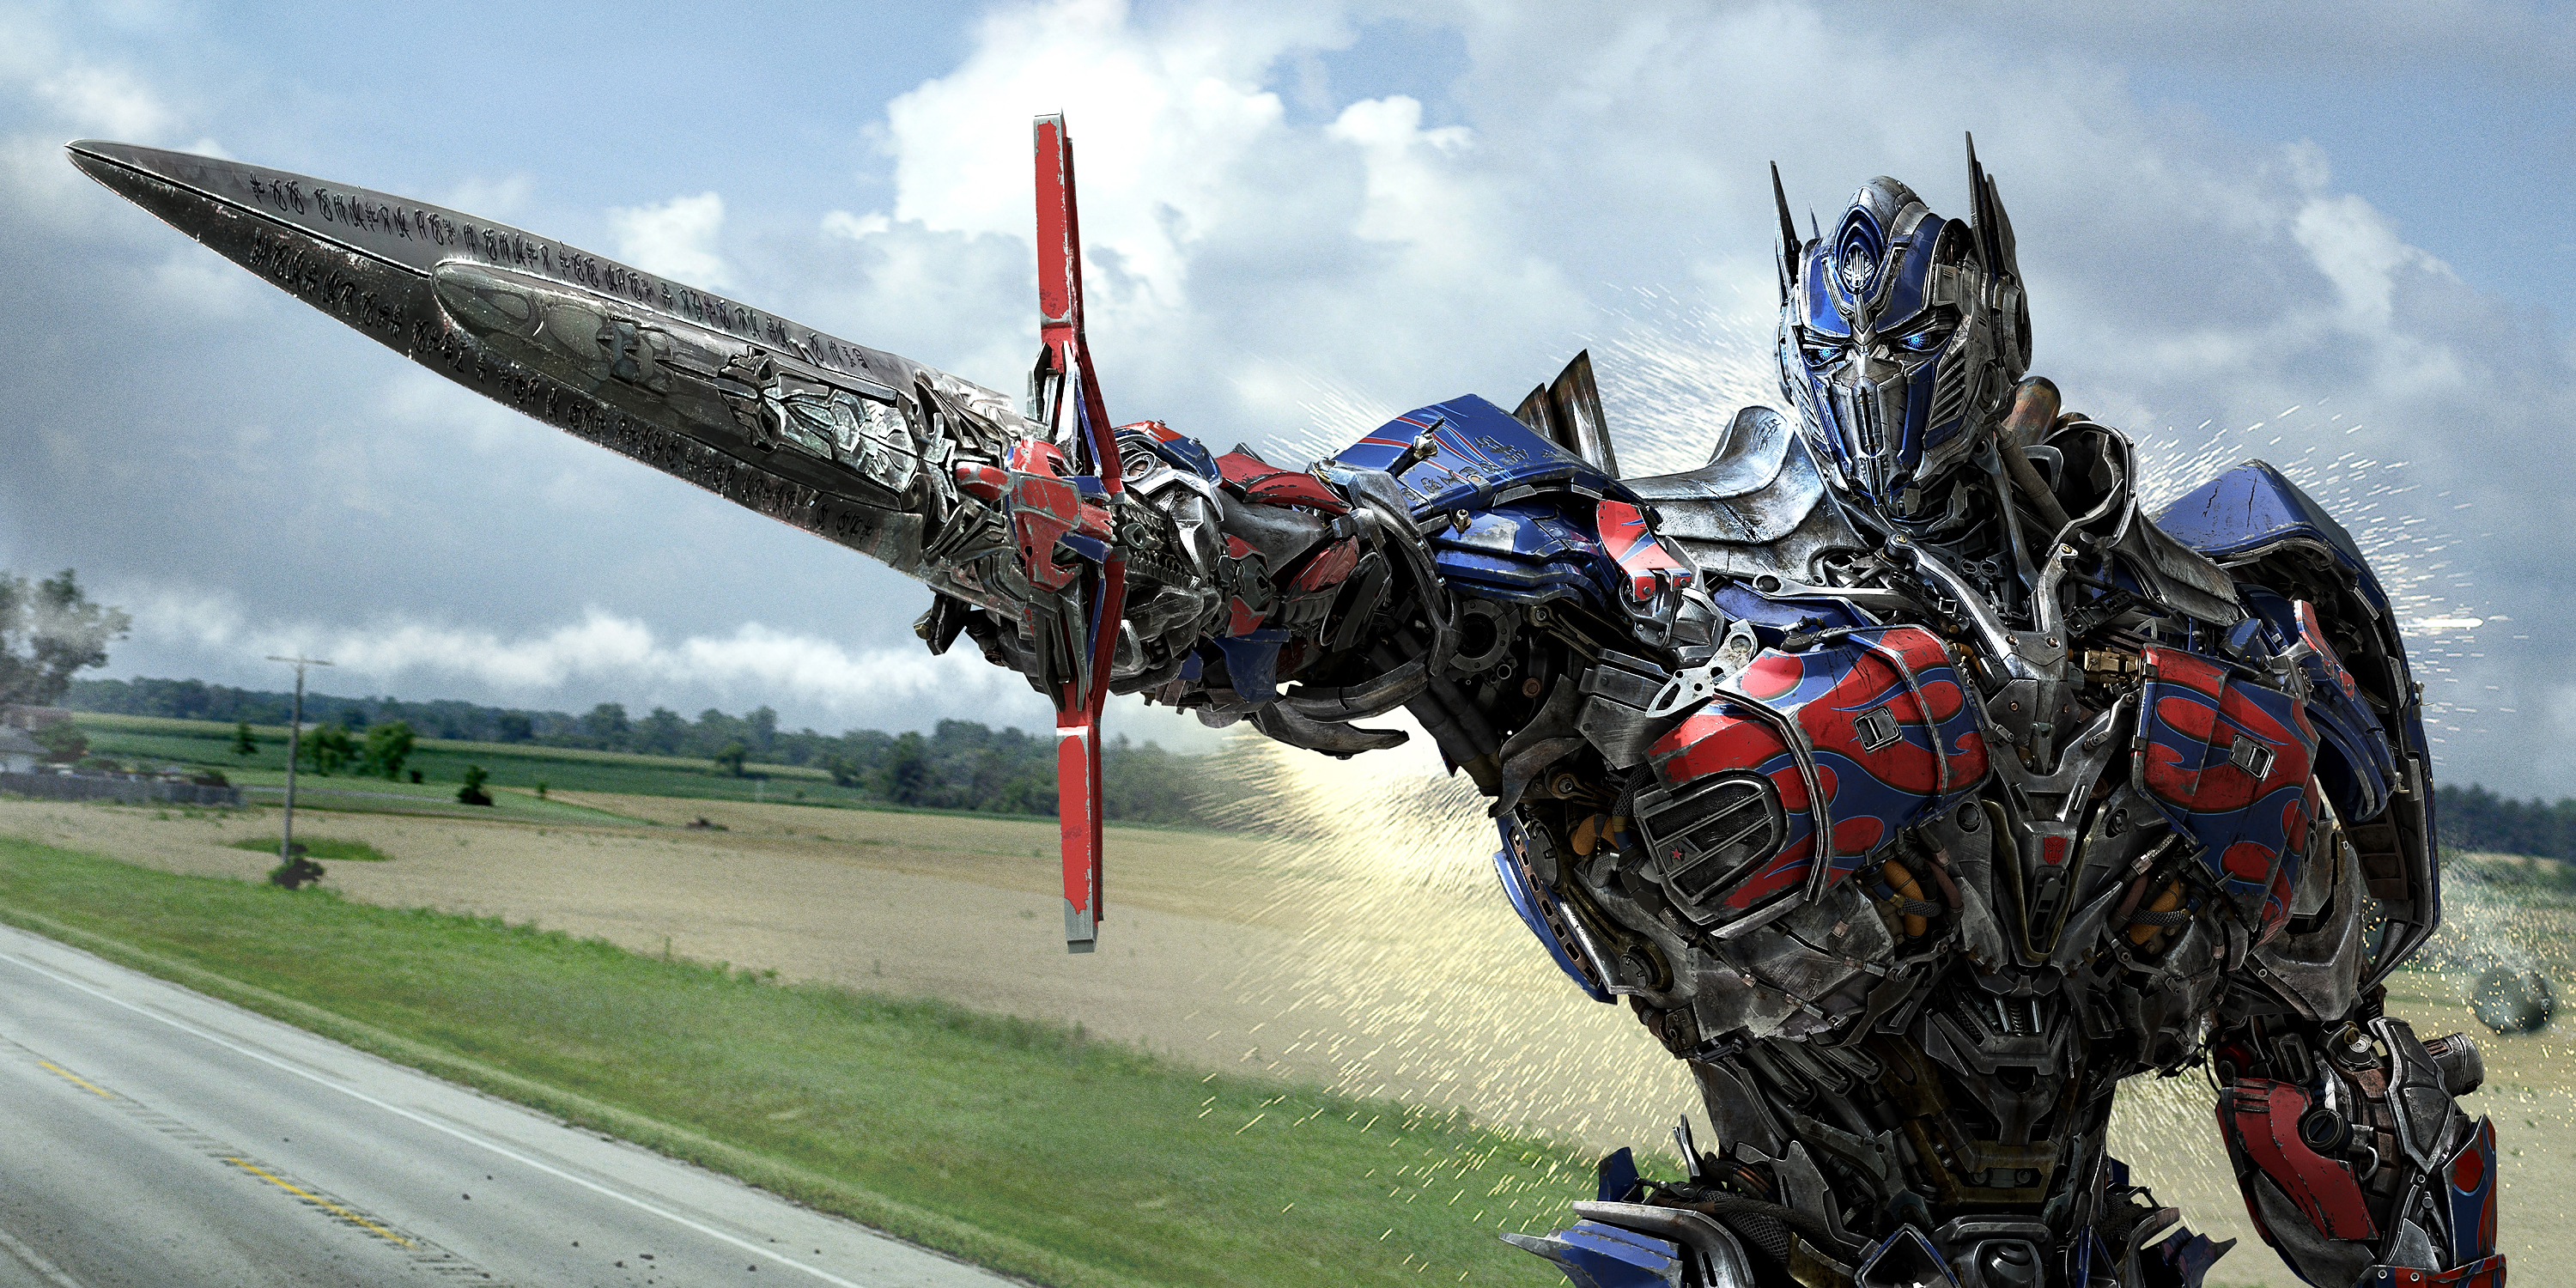 Optimus Prime se foi”, revela a sinopse oficial de 'Transformers